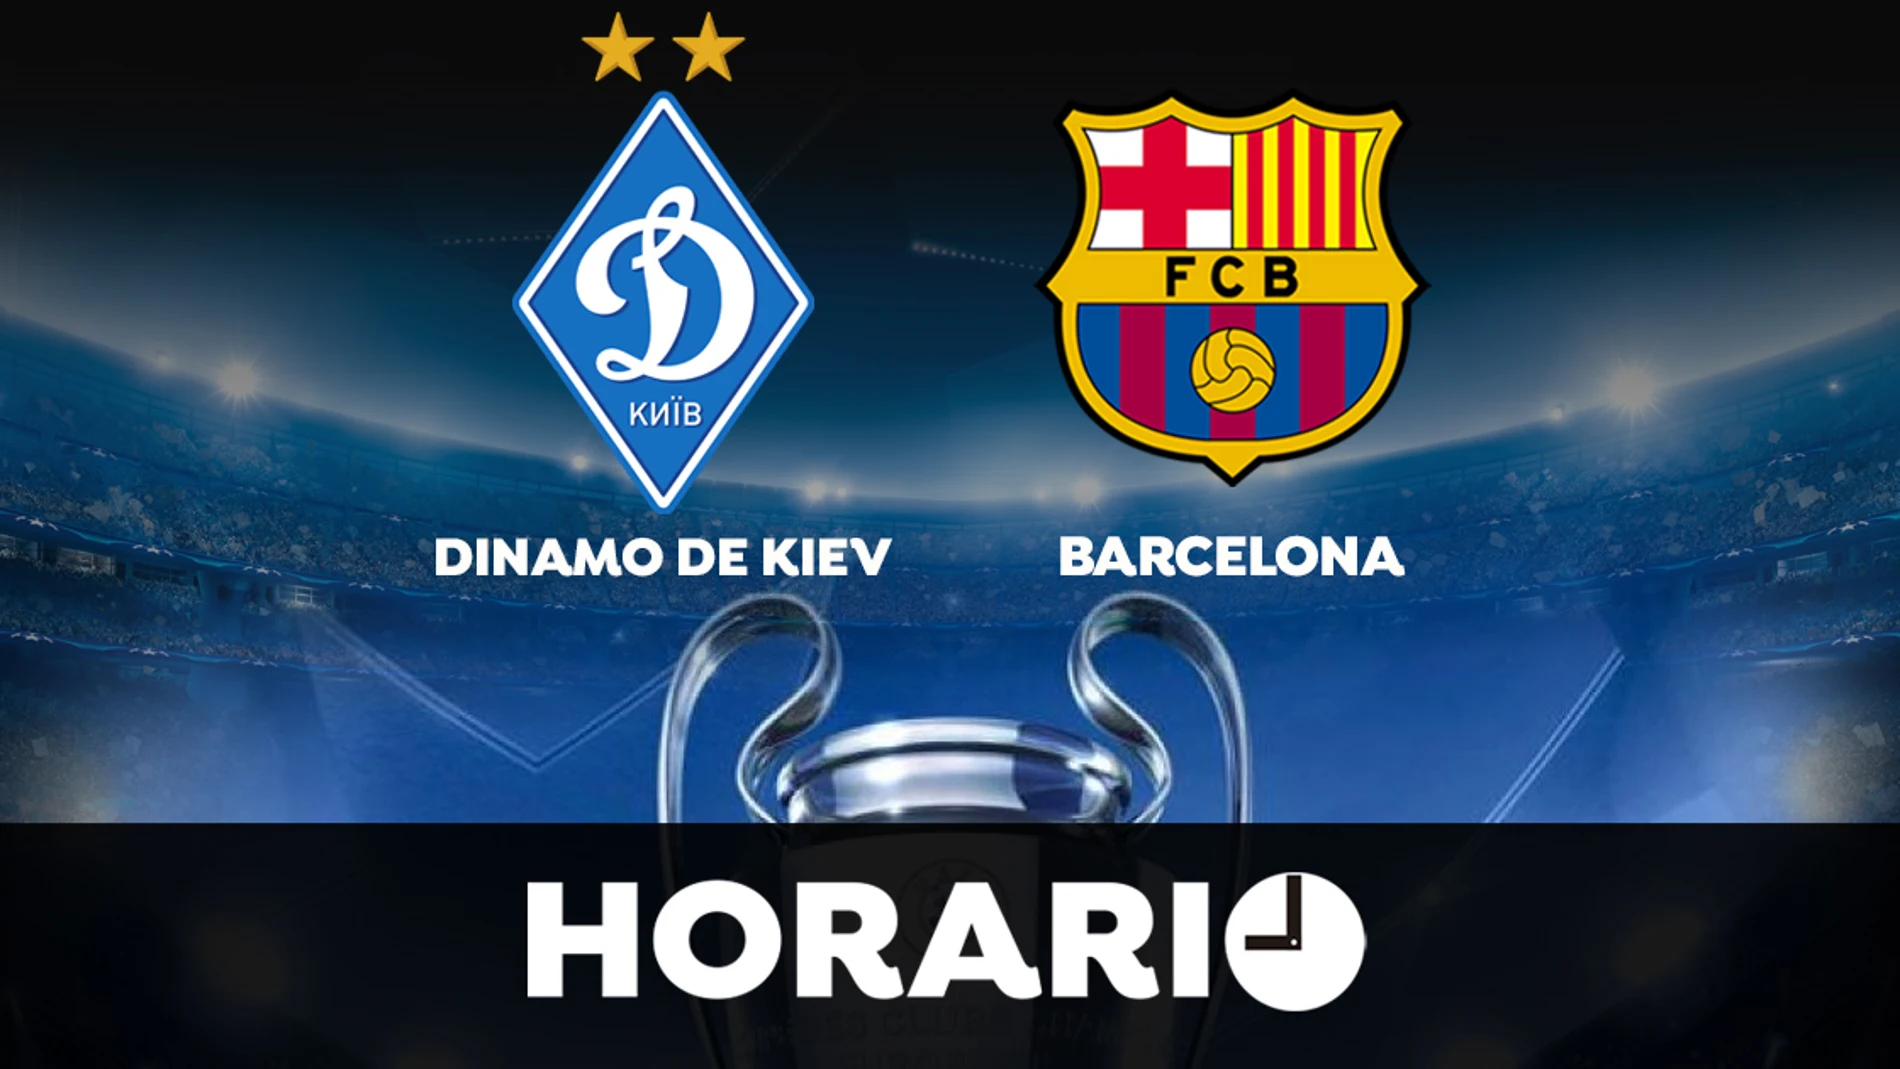 Dinamo de Kiev - Barcelona: Horario y donde ver el partido de la Champions League en directo